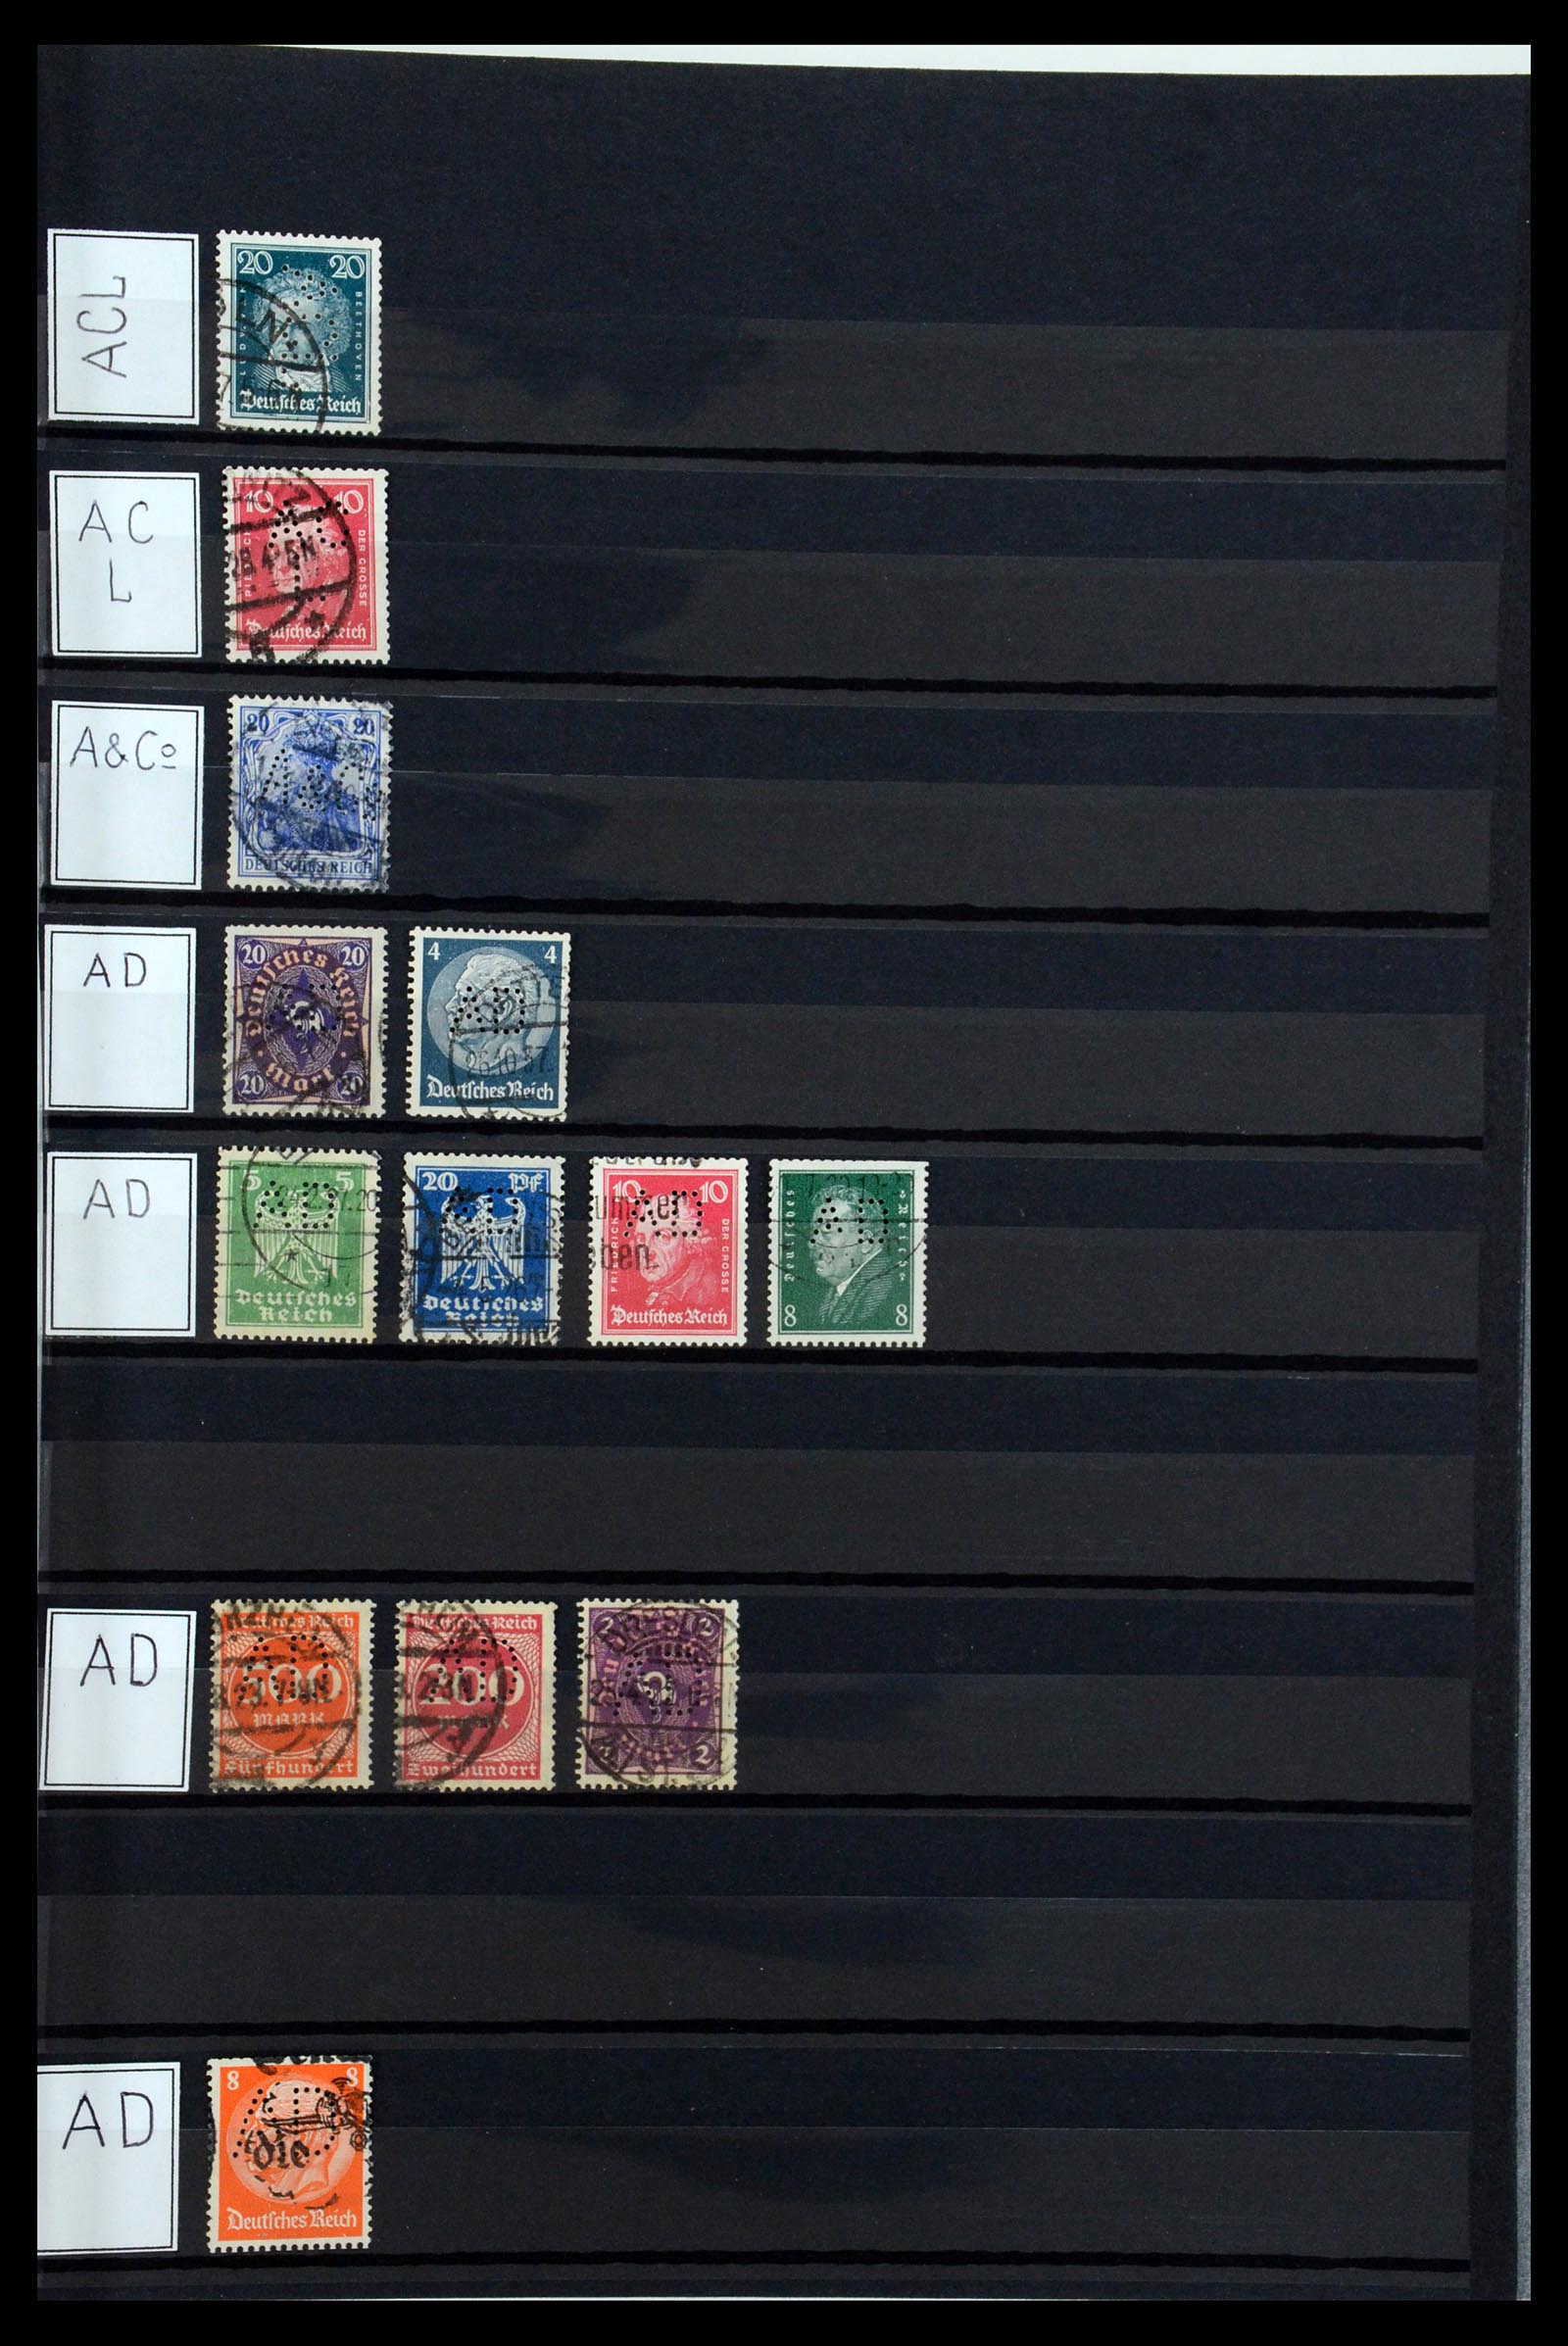 36405 007 - Stamp collection 36405 German Reich perfins 1880-1945.